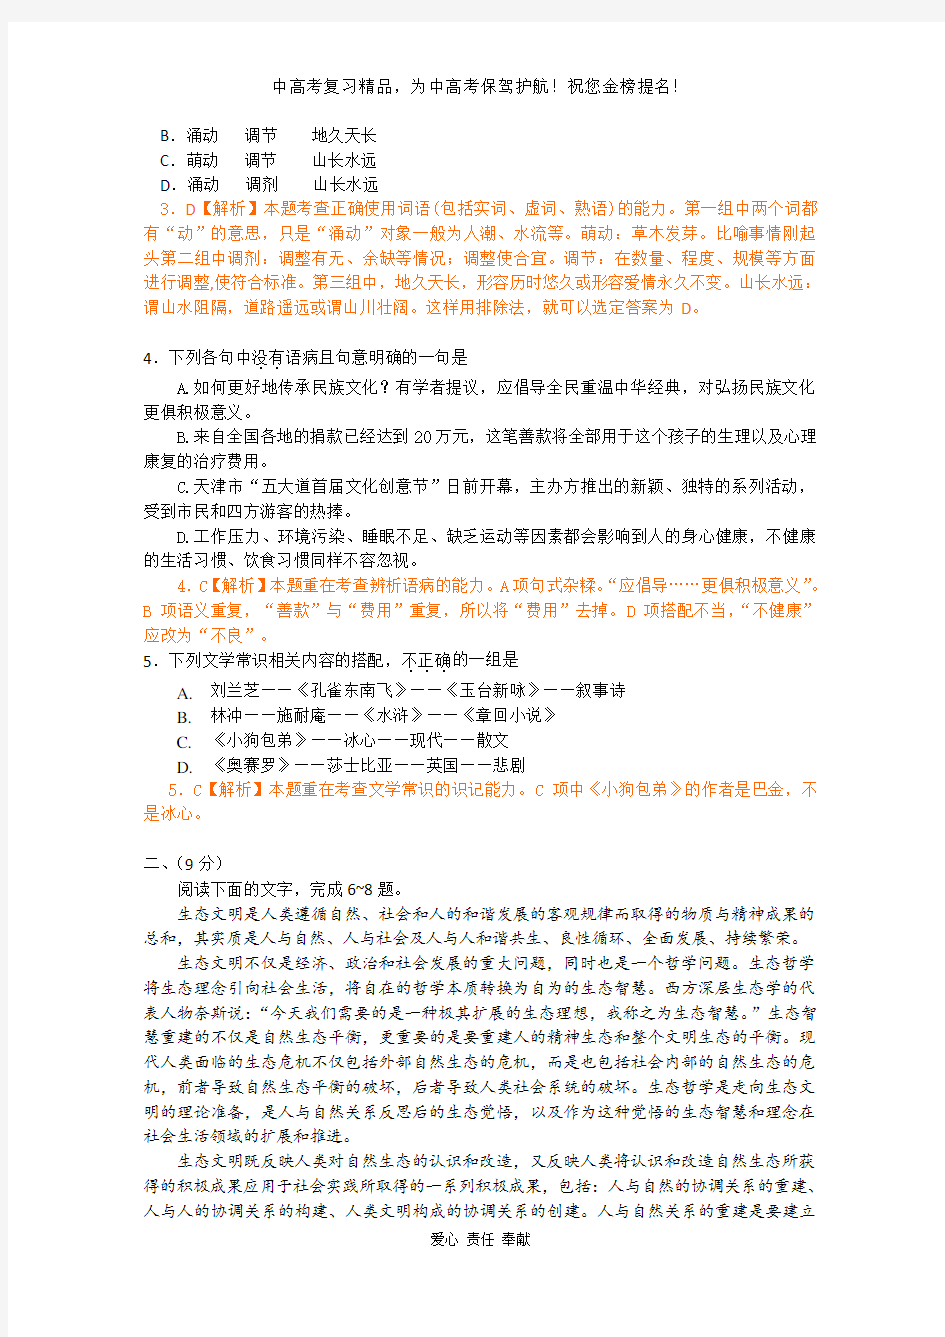 2012年语文高考试题答案及解析-天津